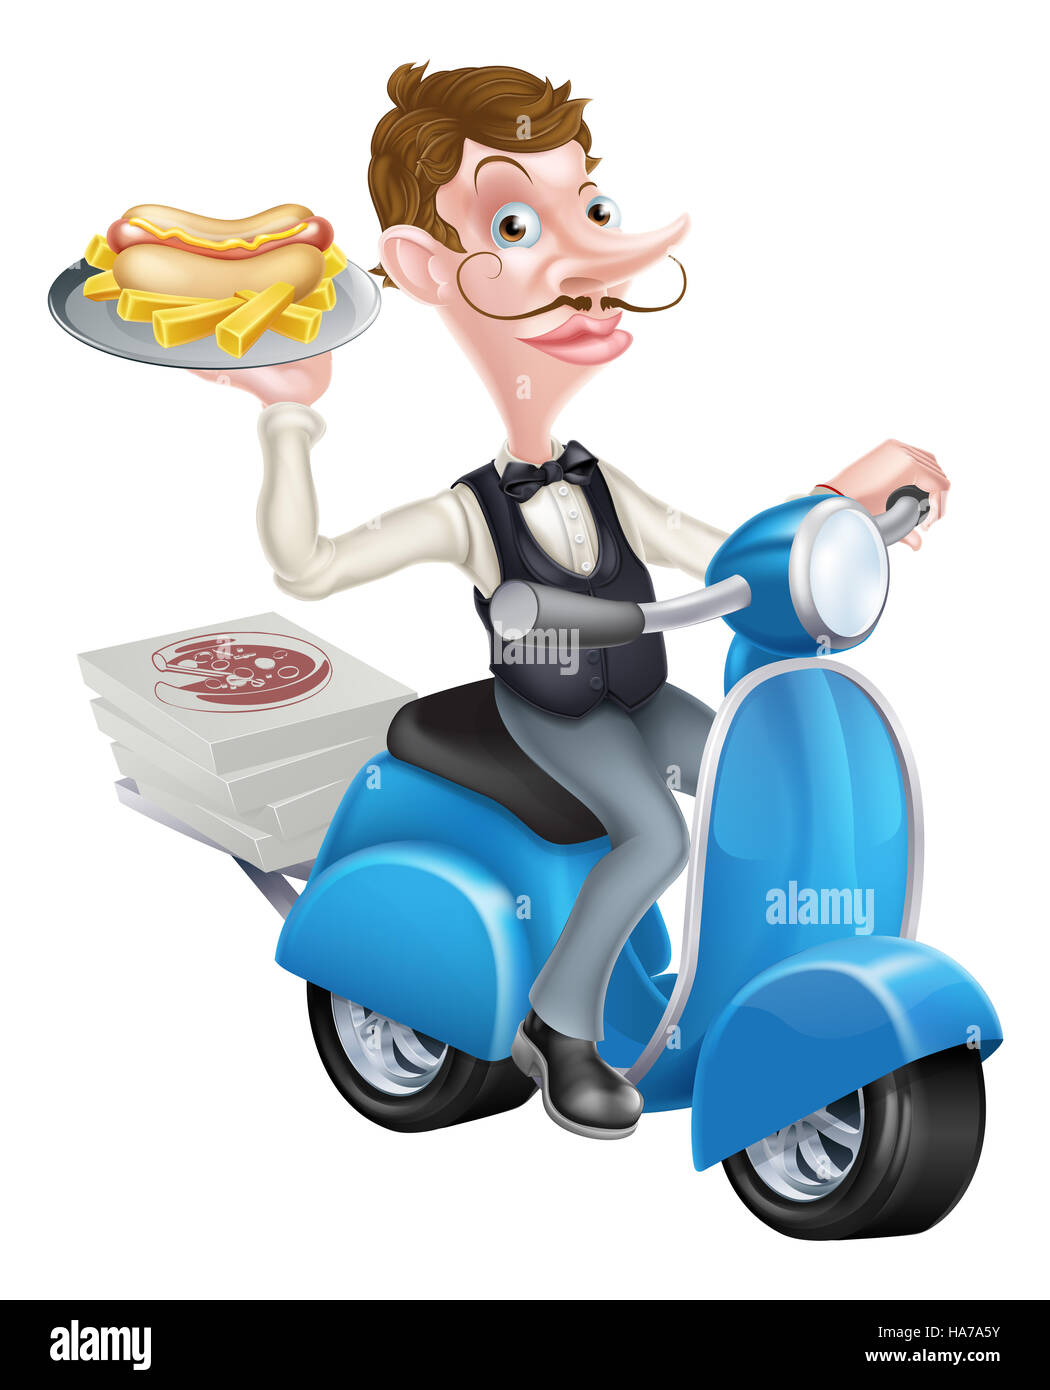 Cartoon camarero en scooter ciclomotor entregando Hotdog Foto de stock